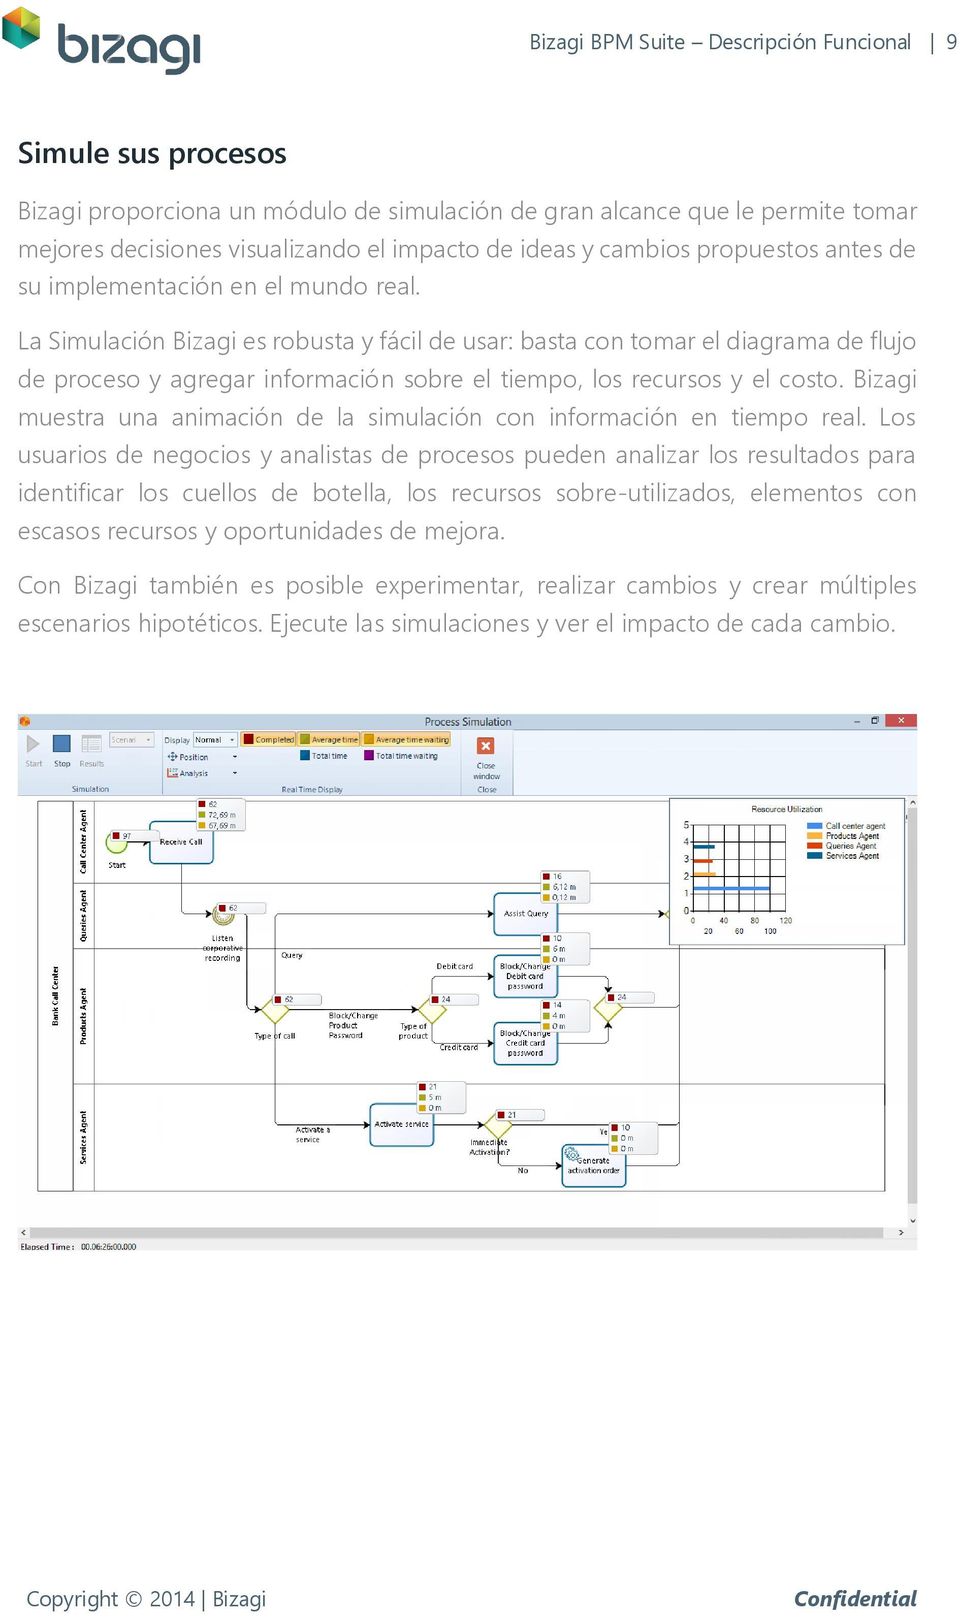 La Simulación Bizagi es robusta y fácil de usar: basta con tomar el diagrama de flujo de proceso y agregar información sobre el tiempo, los recursos y el costo.